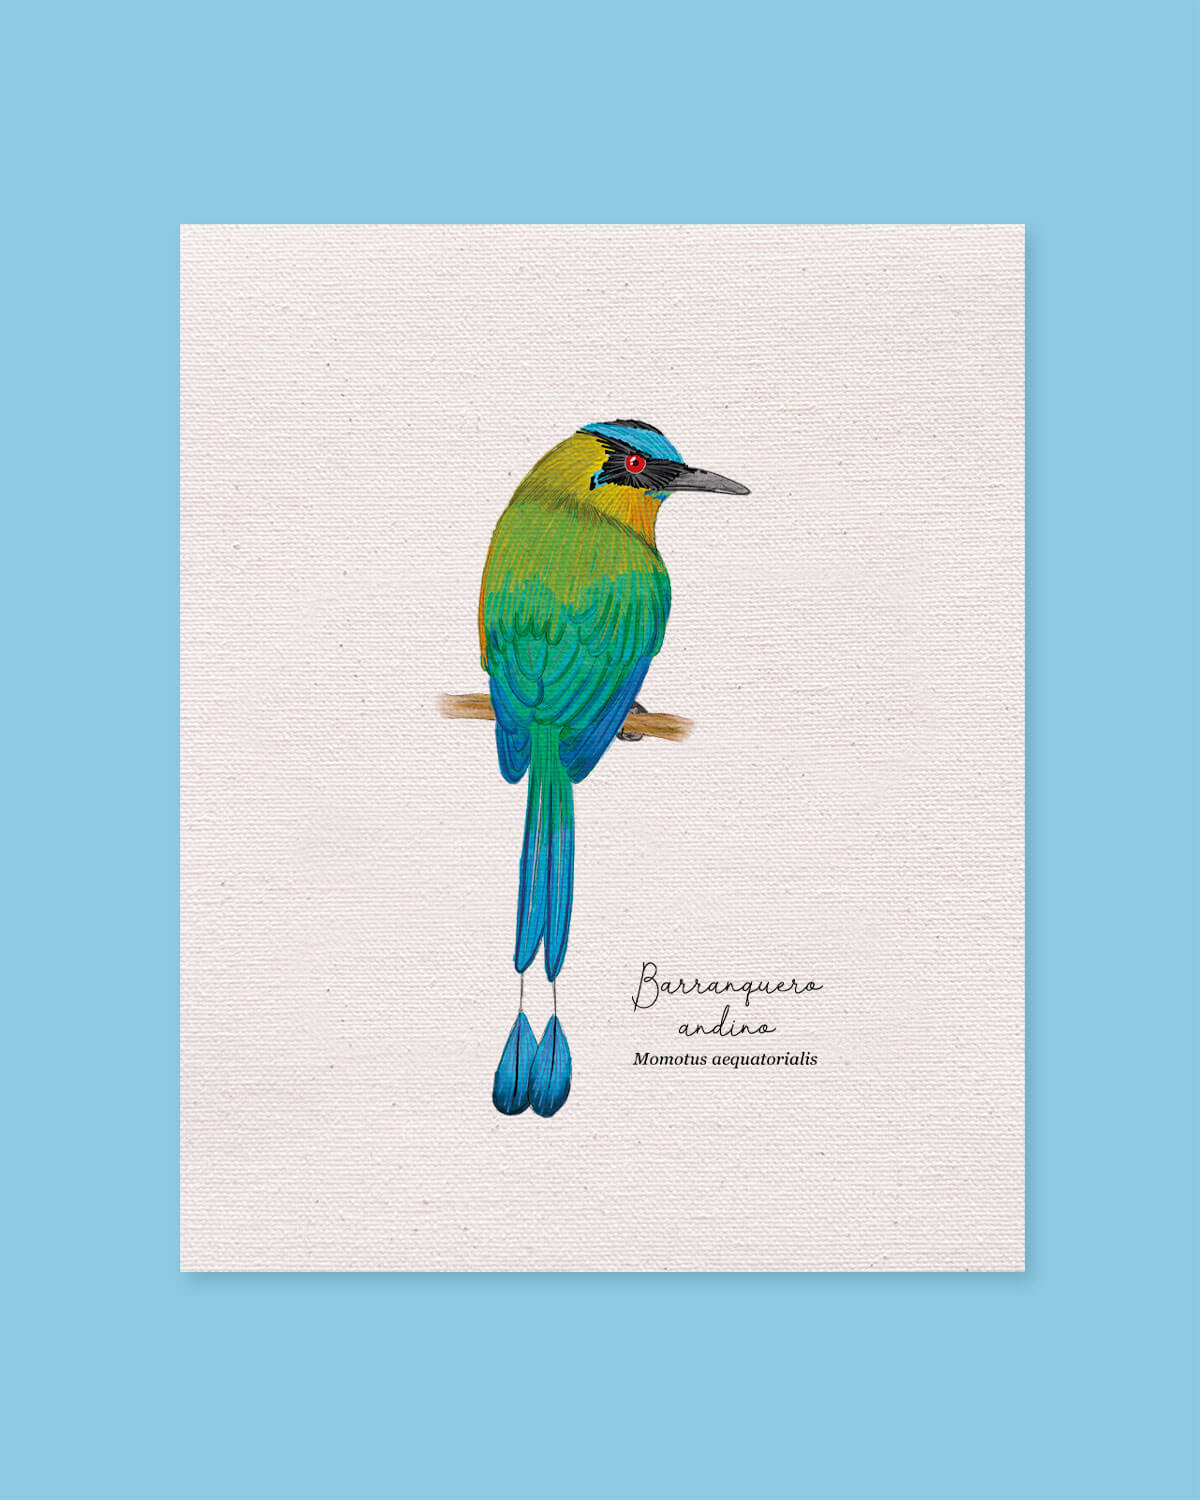 Barranquero ave colombia aves de colombia cuadros regalos souvenirs colombianos Colombia arte artesanías mapas postales decoracion